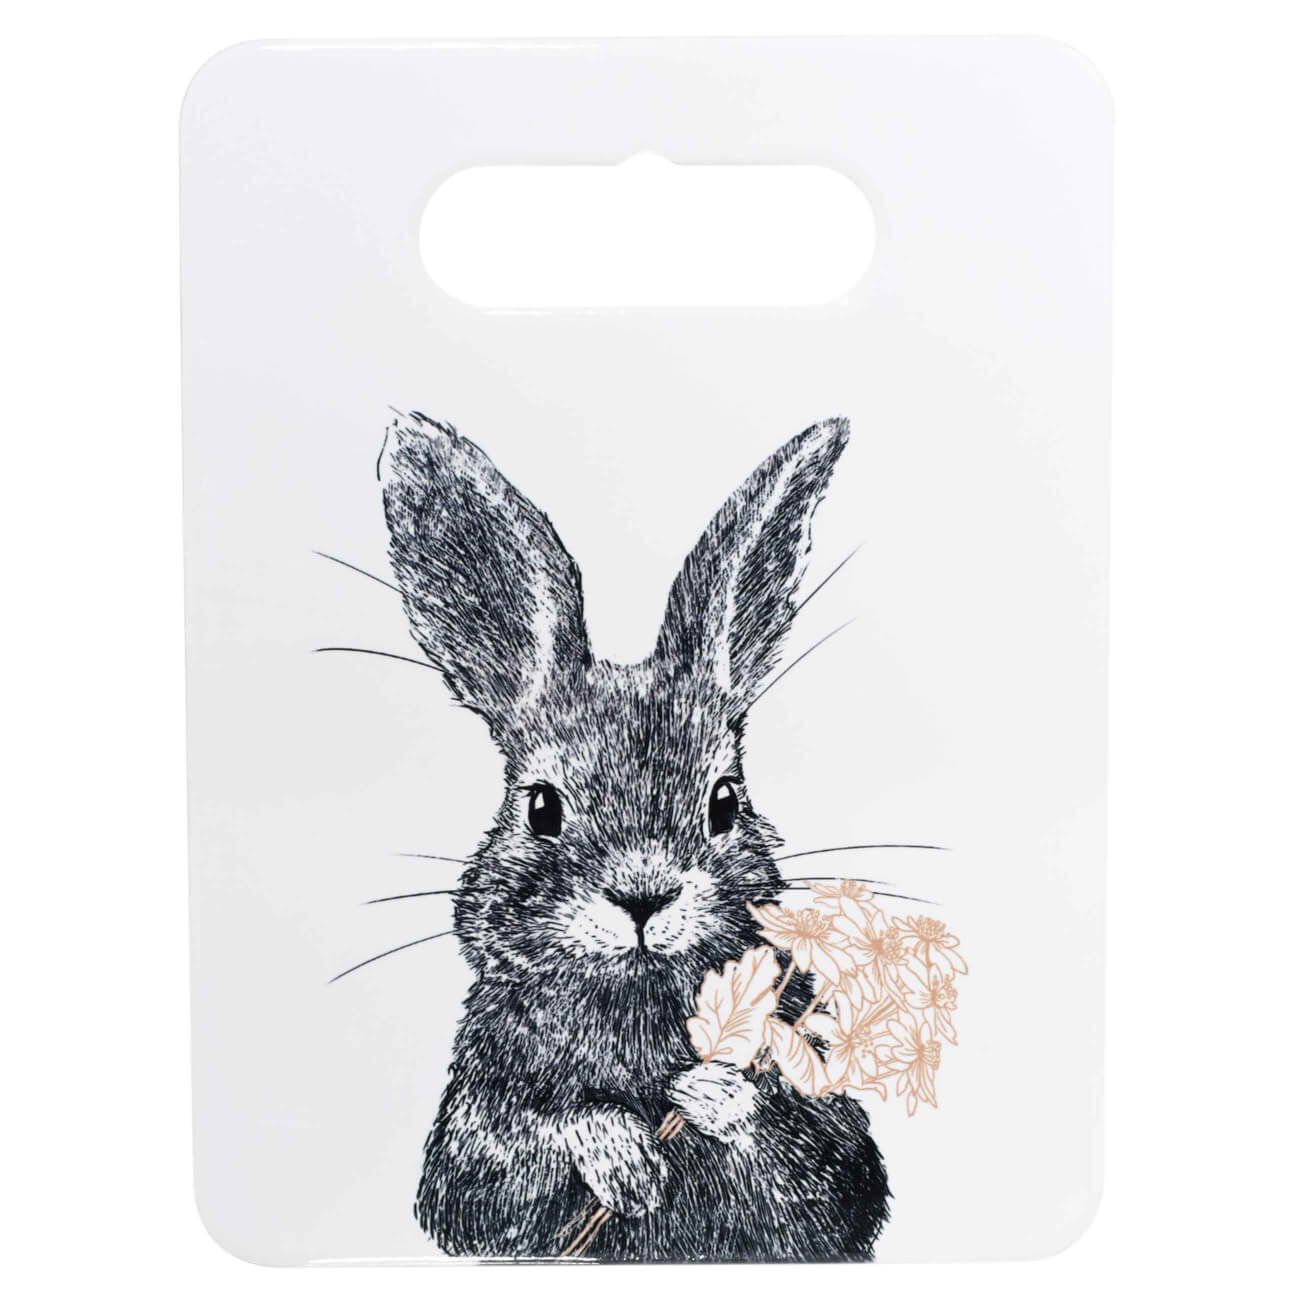 Подставка под горячее, 18x24 см, керамика/пробка, прямоугольная, белая, Кролик, Easter blooming изображение № 1